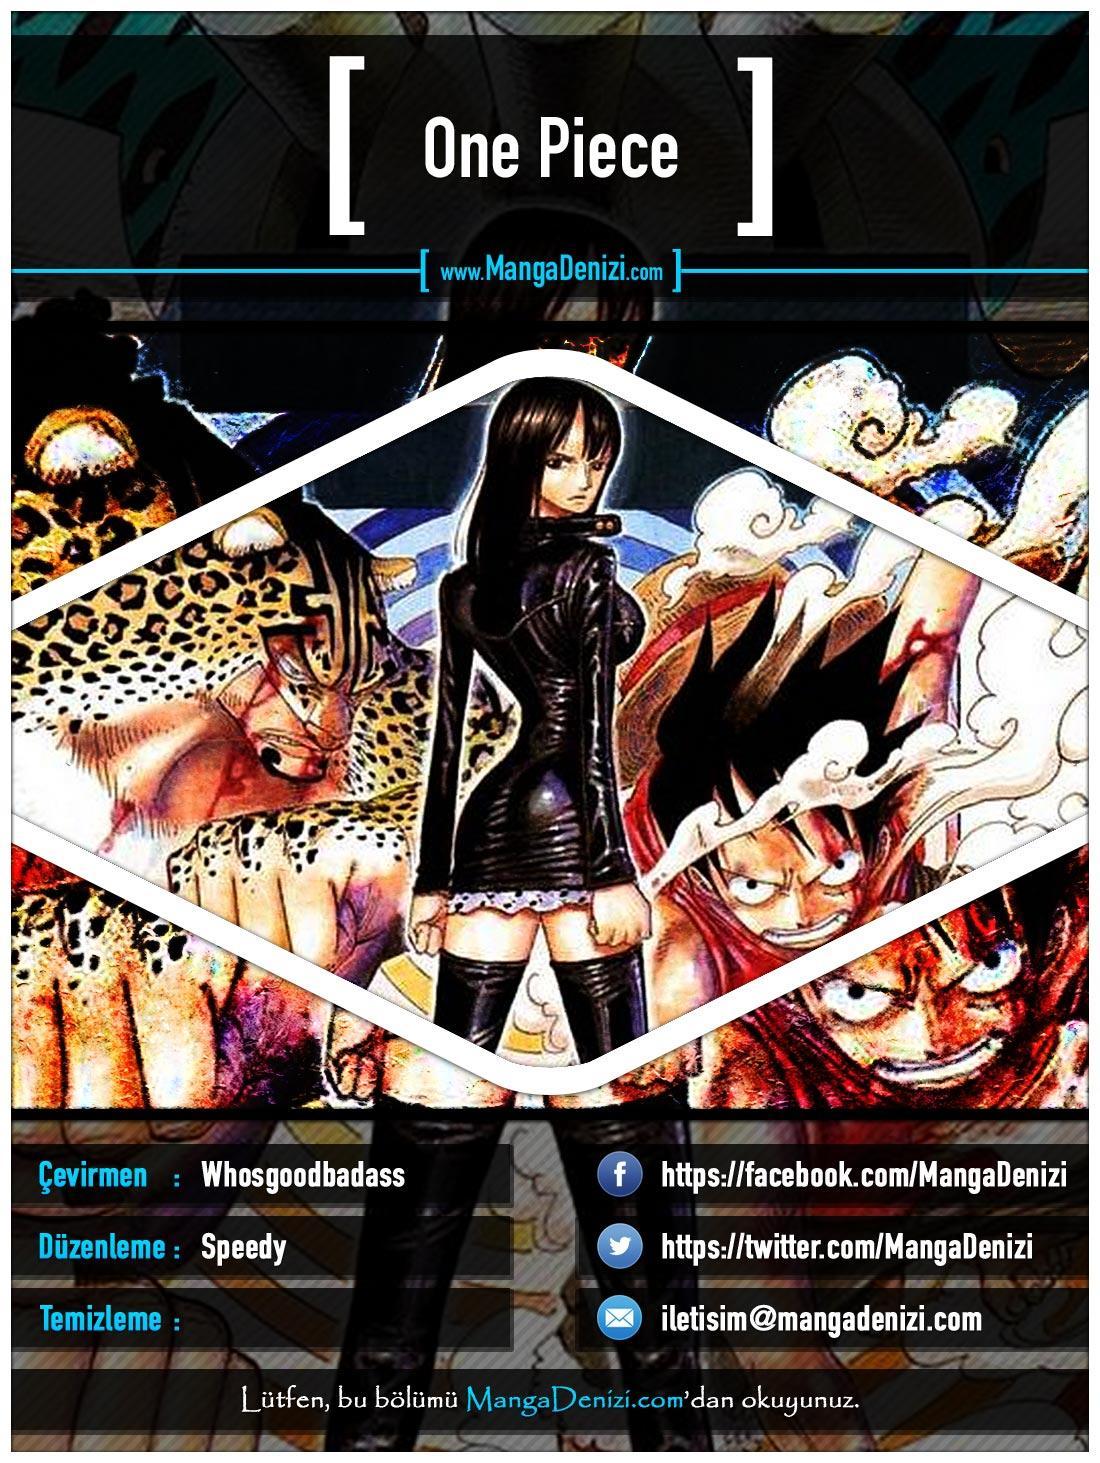 One Piece [Renkli] mangasının 0402 bölümünün 1. sayfasını okuyorsunuz.